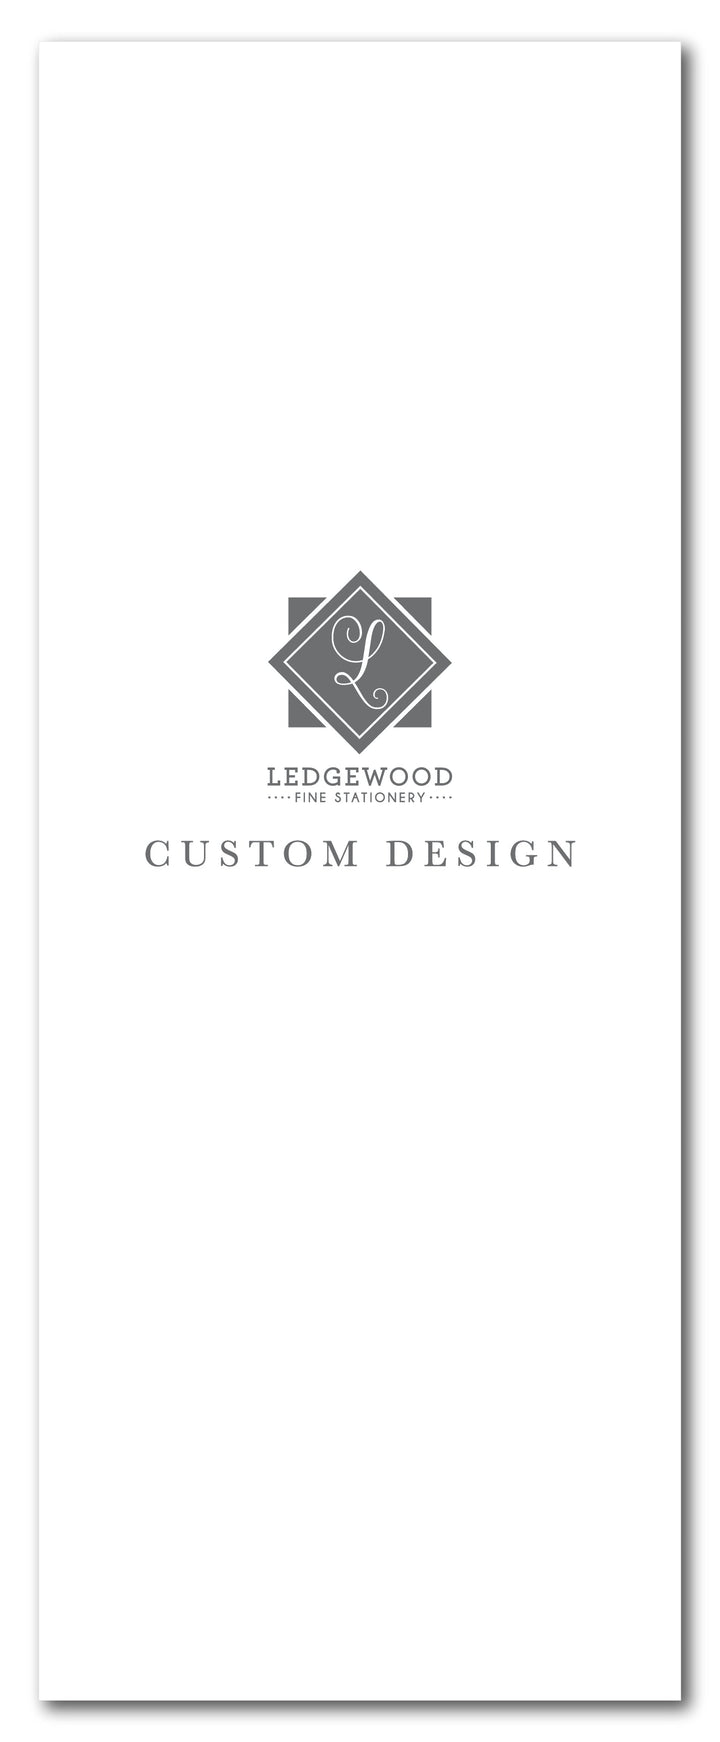 Custom Design Folded Program